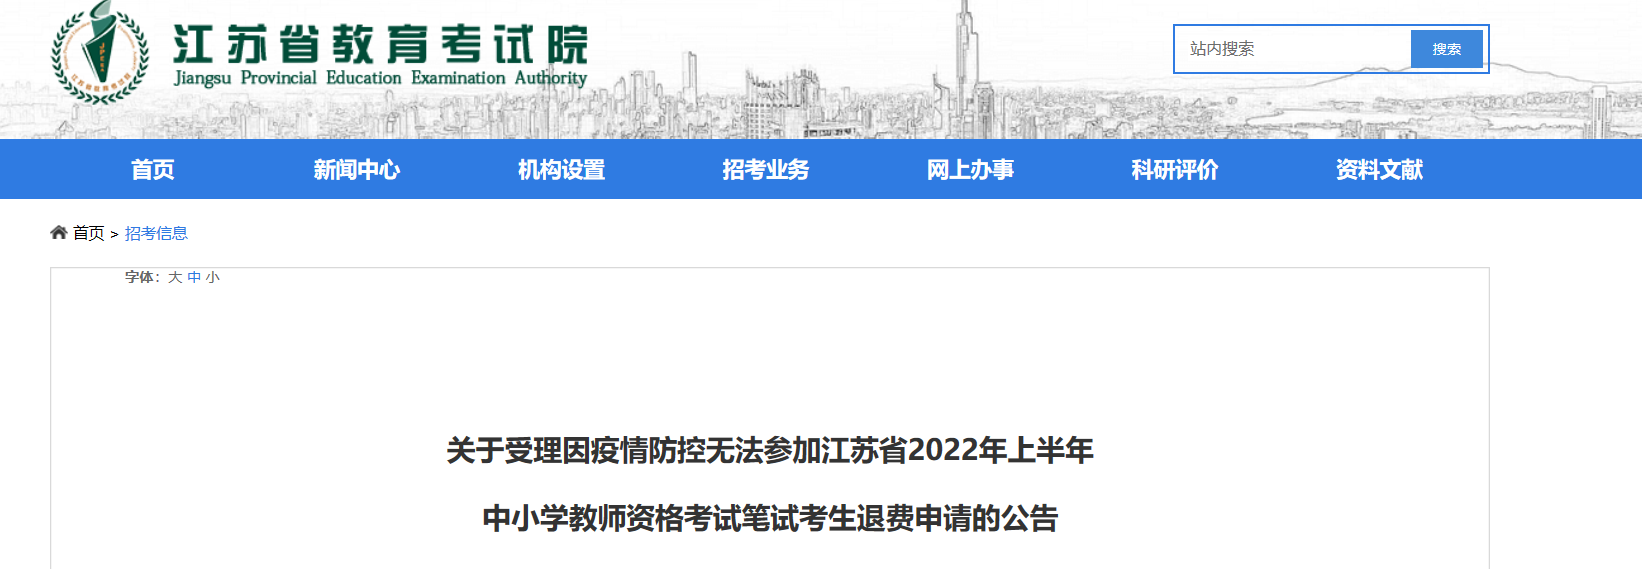 2022年上半年江苏中小学教师资格考试笔试考生退费申请公告